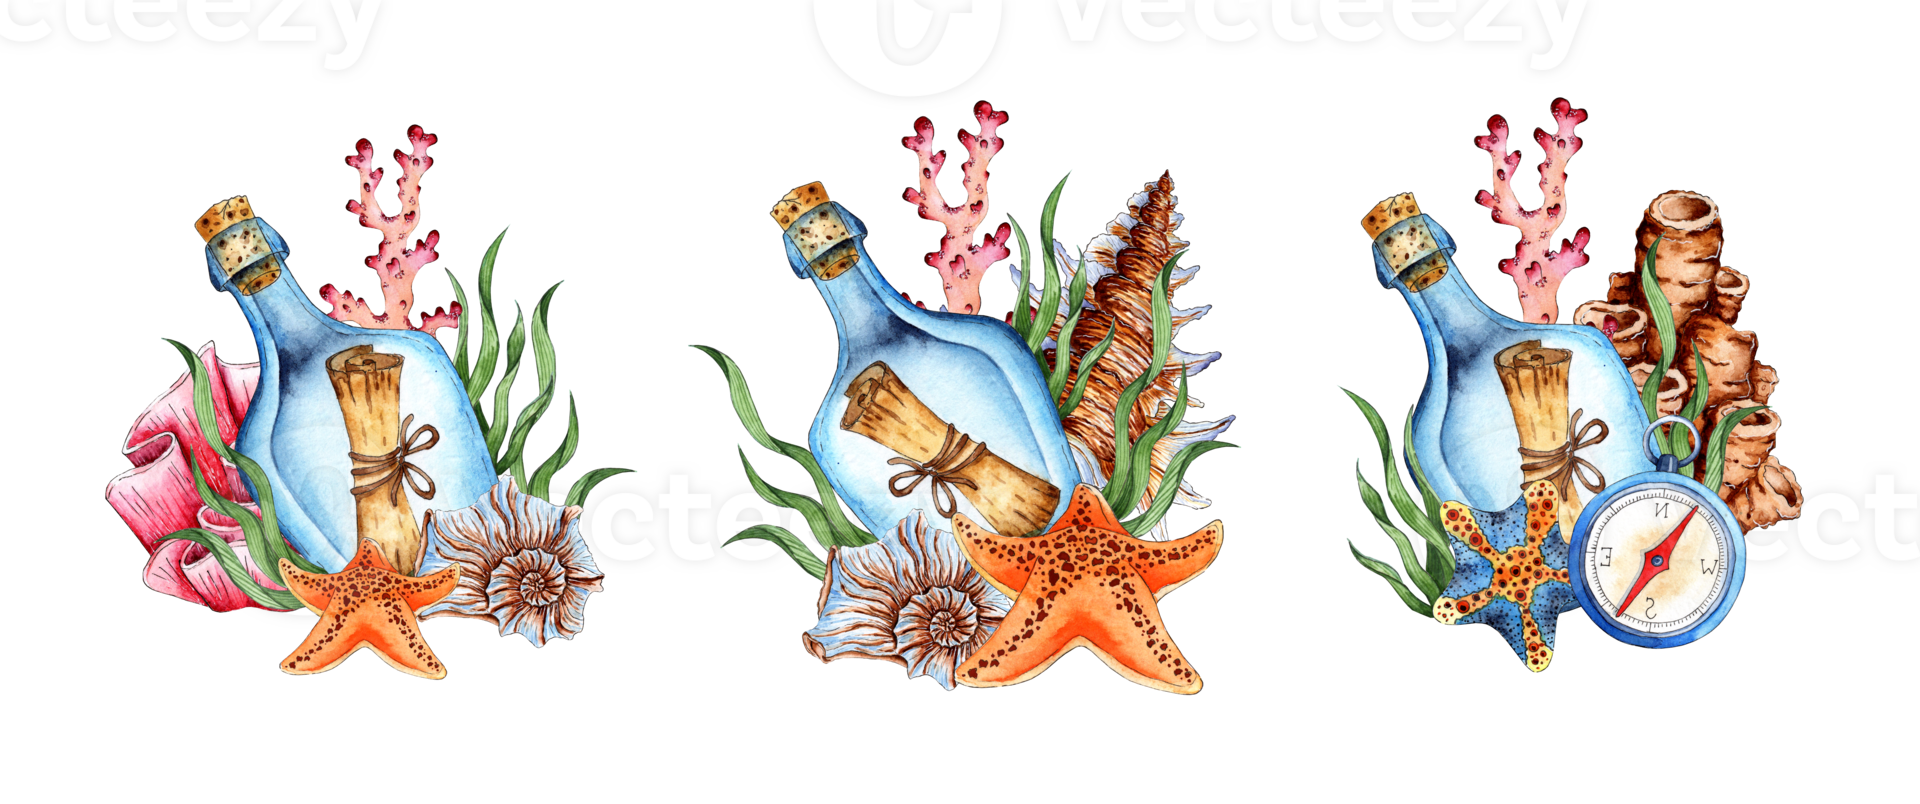 aguarela ilustração conjunto do garrafa com mensagem, algas, coral, estrelas do mar e bússola. tropical marinho clipart. composição para a Projeto do recordações, cartões postais, cartazes, bandeiras, menus, etiquetas png